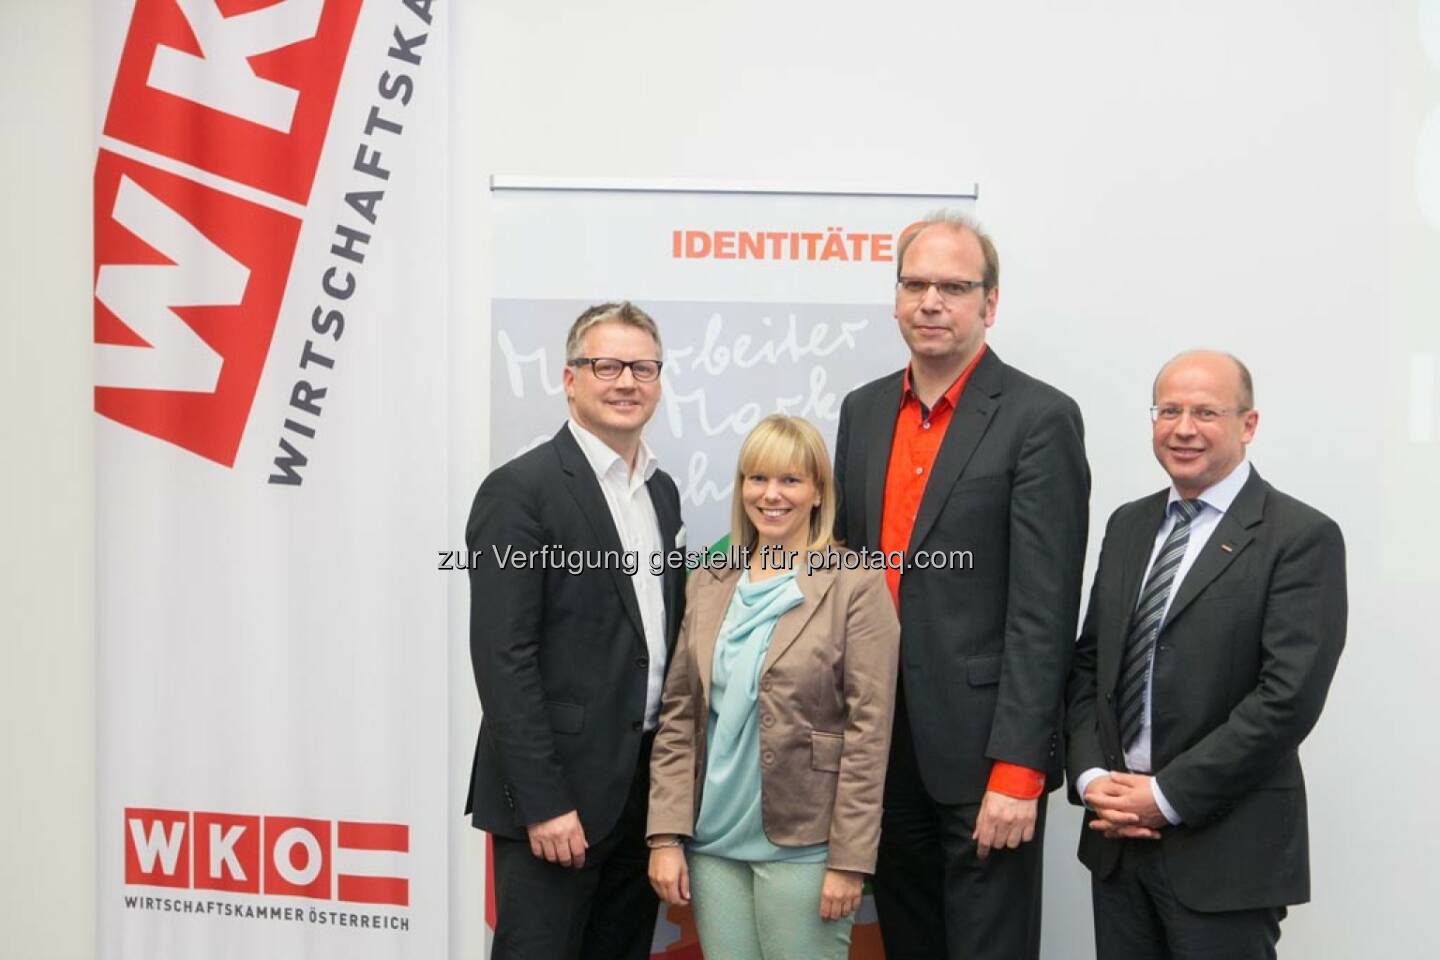 Ralf Tometschek (Wortwelt), Sabine Hödl (Identitäter), Klaus Eck (Eck Consulting Group)